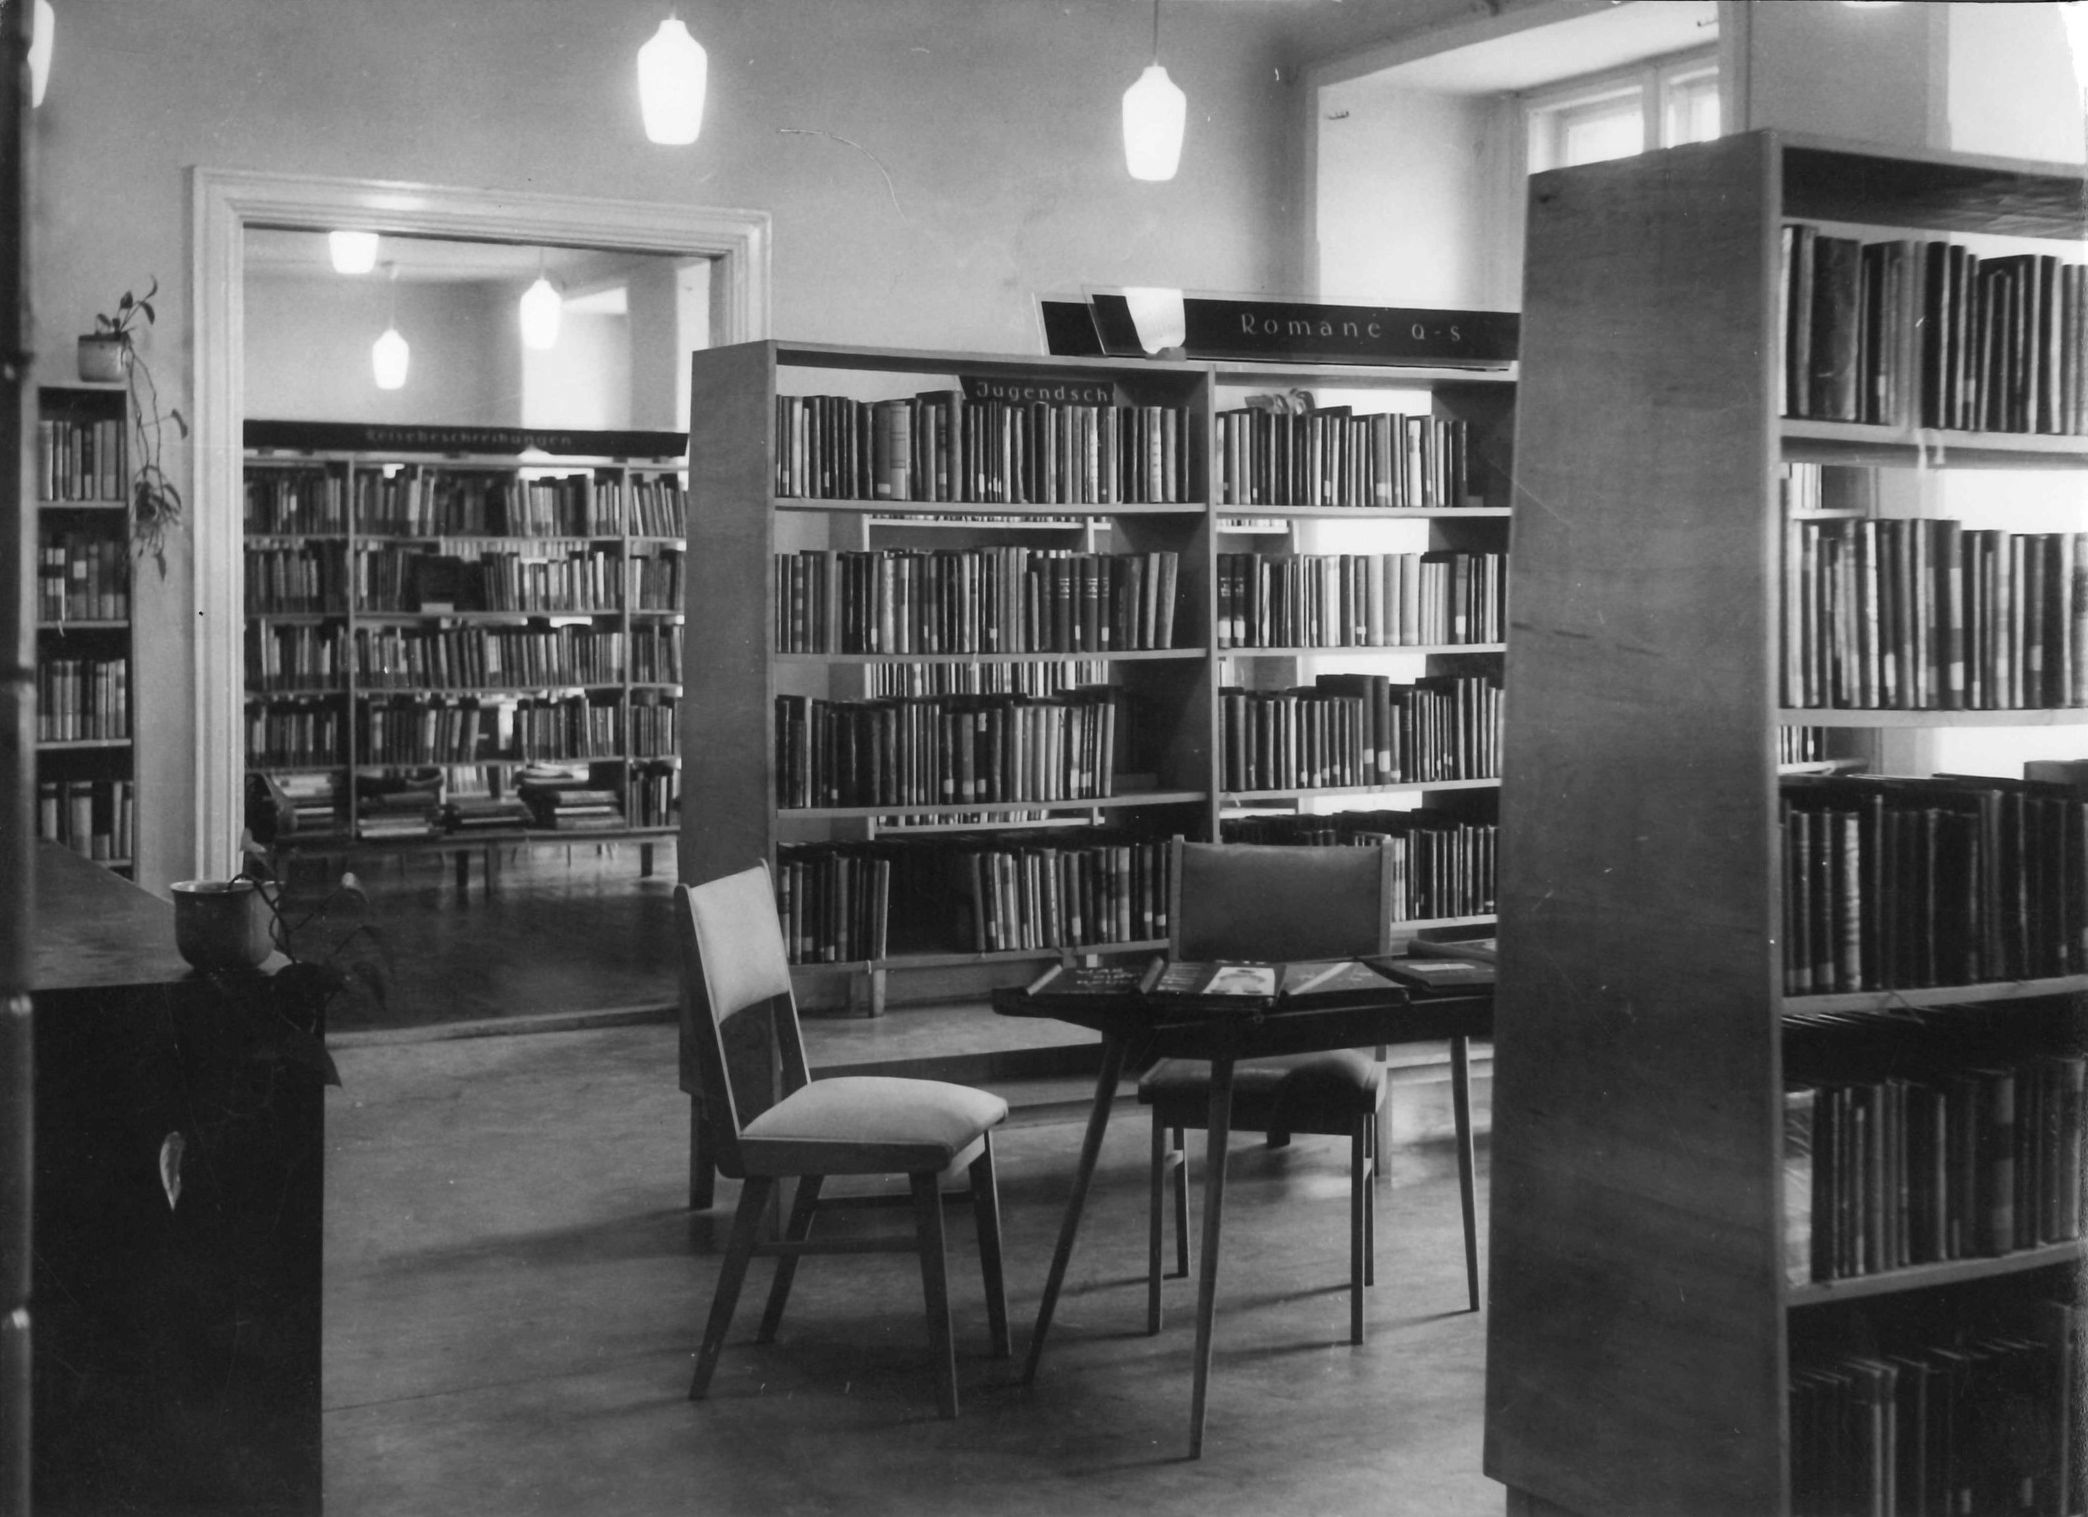 Stühle und Regale sind im Freihandbereich der Stadtbibliothek im Jahr 1961 zu sehen.